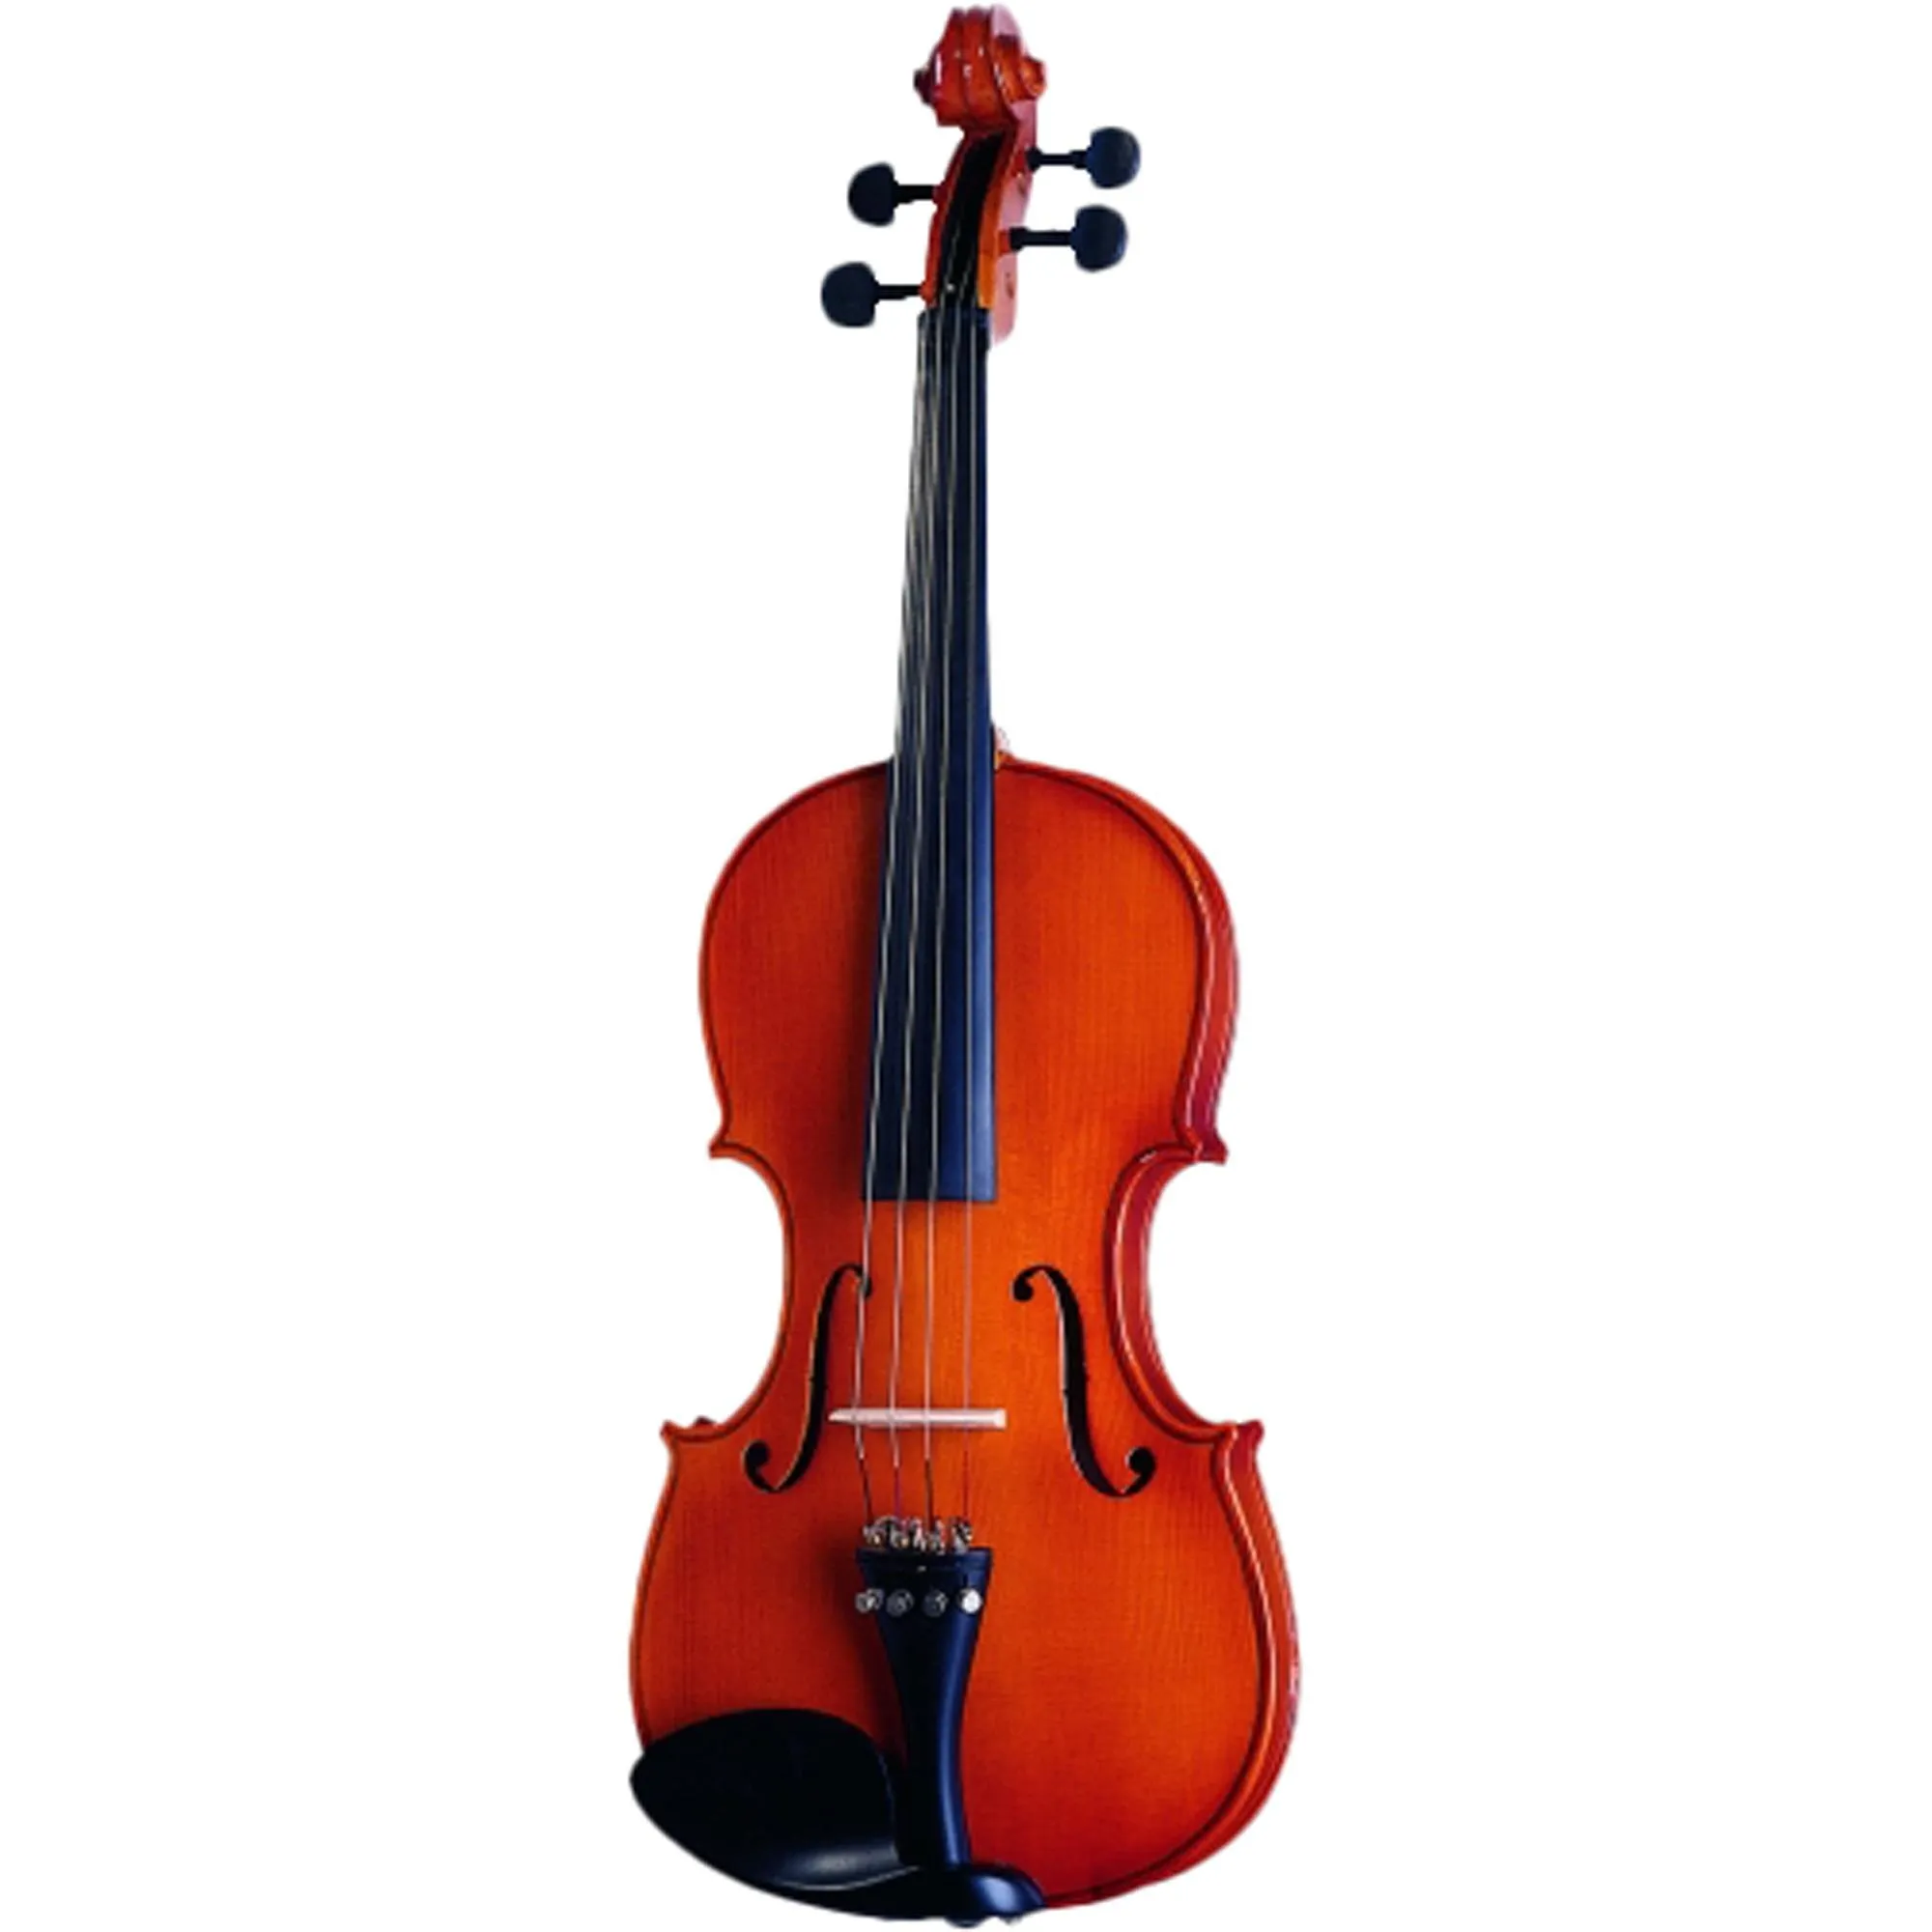 Violino MICHAEL 4/4 VNM40 por 908,99 à vista no boleto/pix ou parcele em até 10x sem juros. Compre na loja Mundomax!